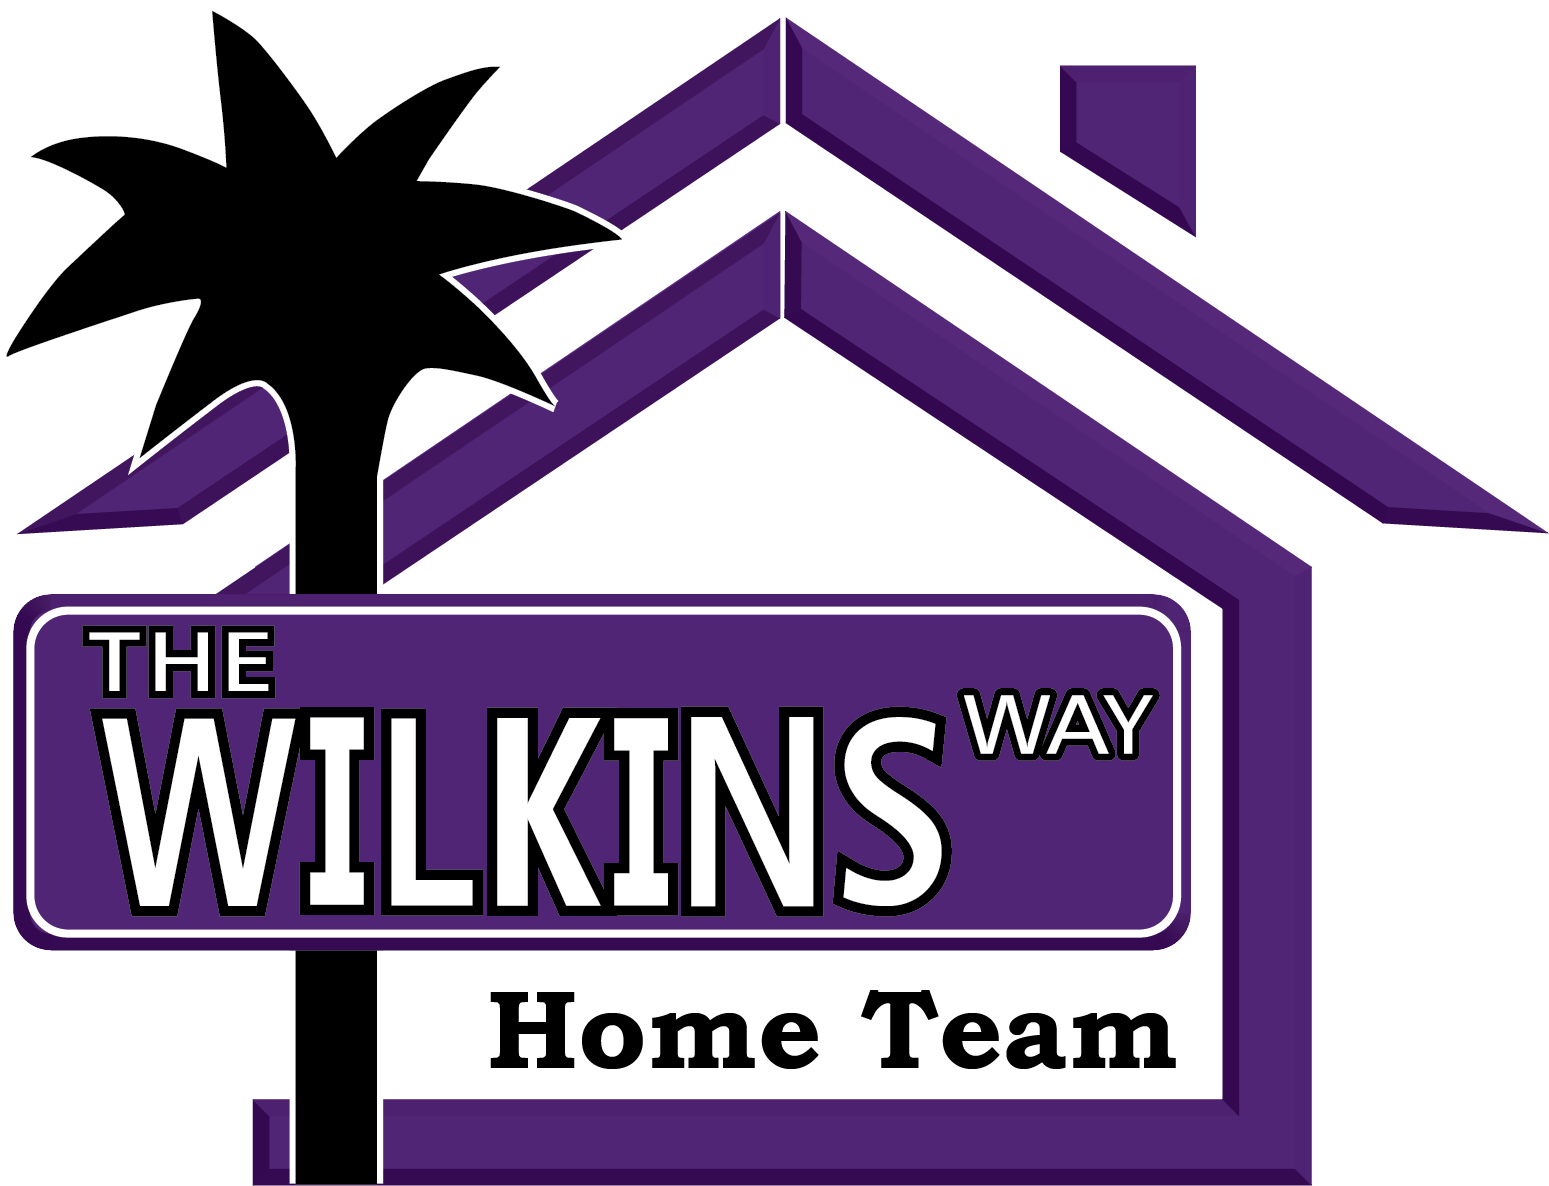 The Wilkins way